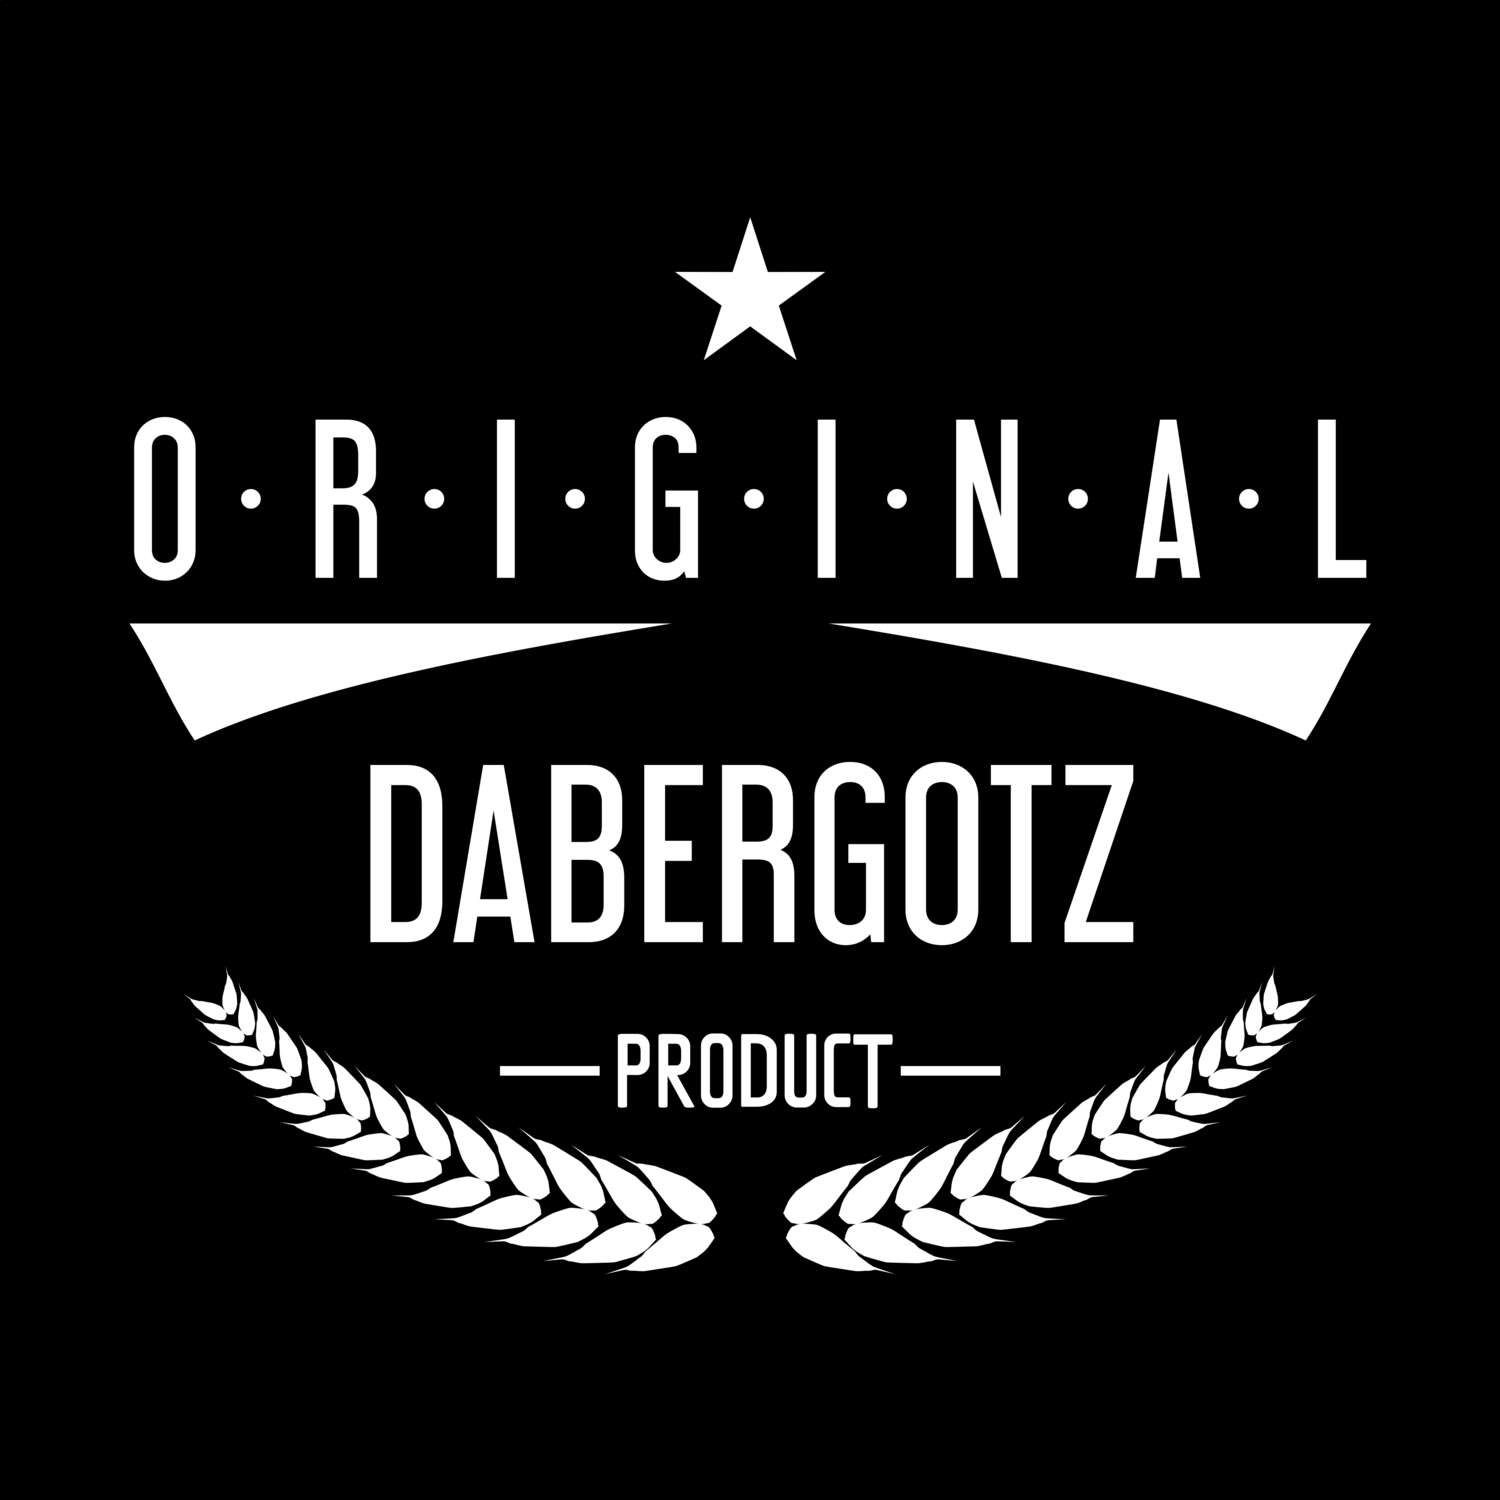 Dabergotz T-Shirt »Original Product«